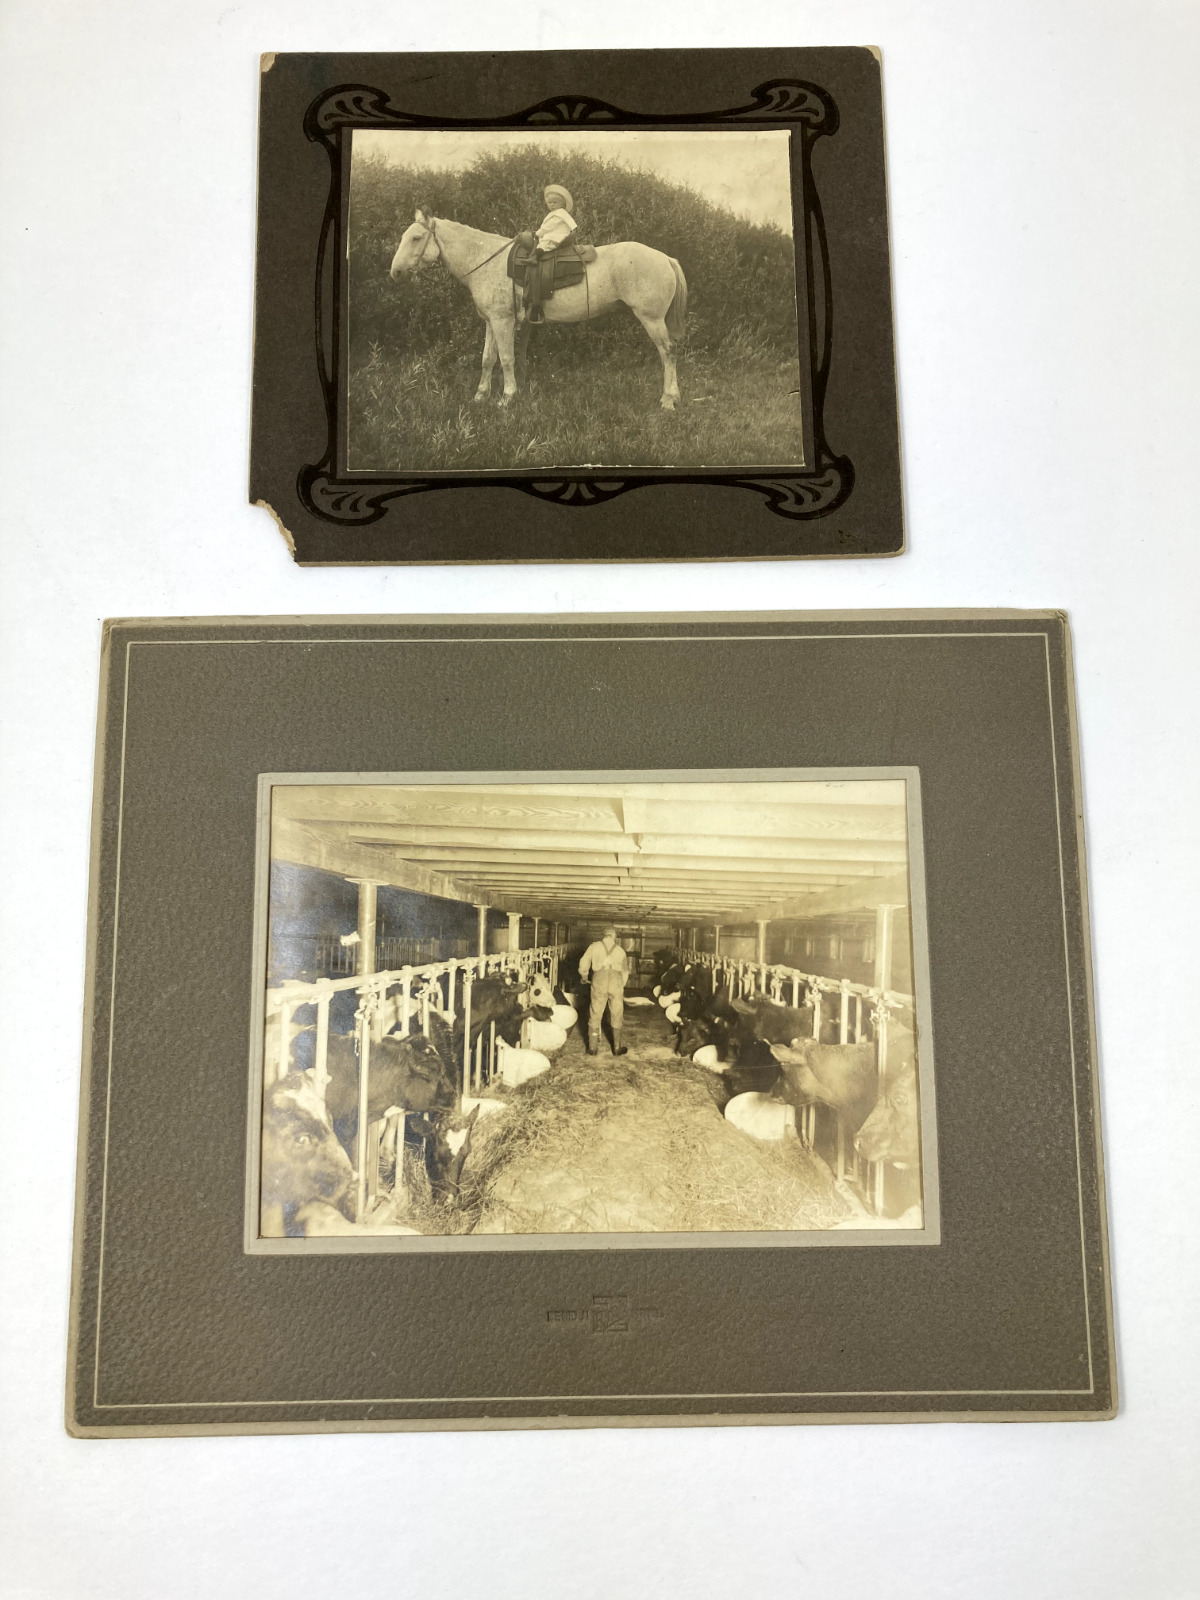 2 Vintage Farm Real B&W Photographs on matboard Boy on Horse & Man Feeding Cows